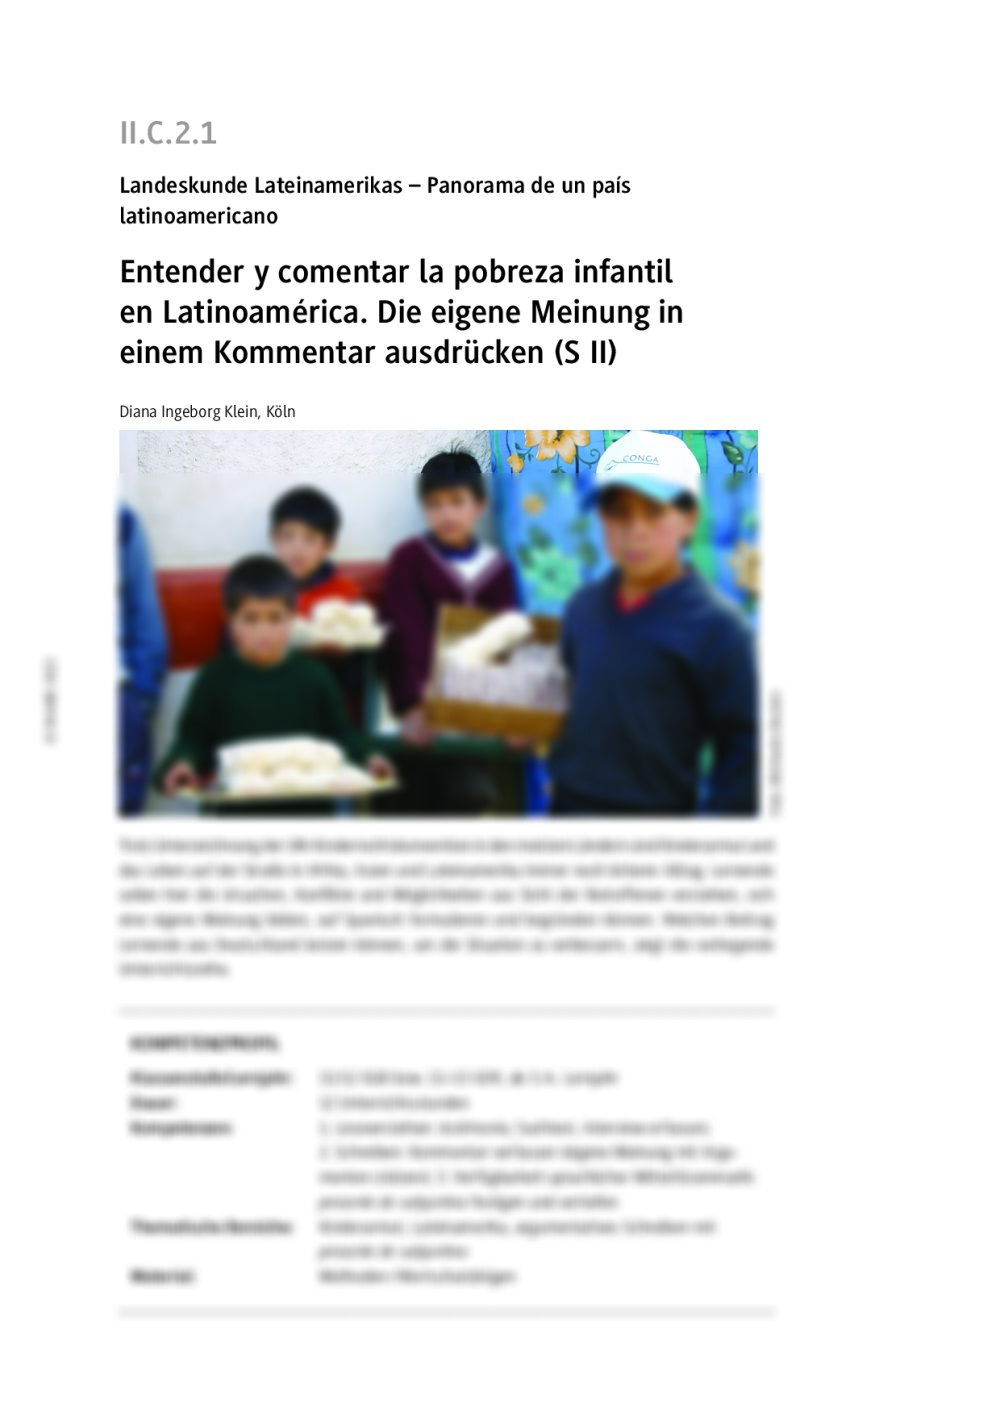 Entender y comentar la pobreza infantil en Latinoamérica - Seite 1